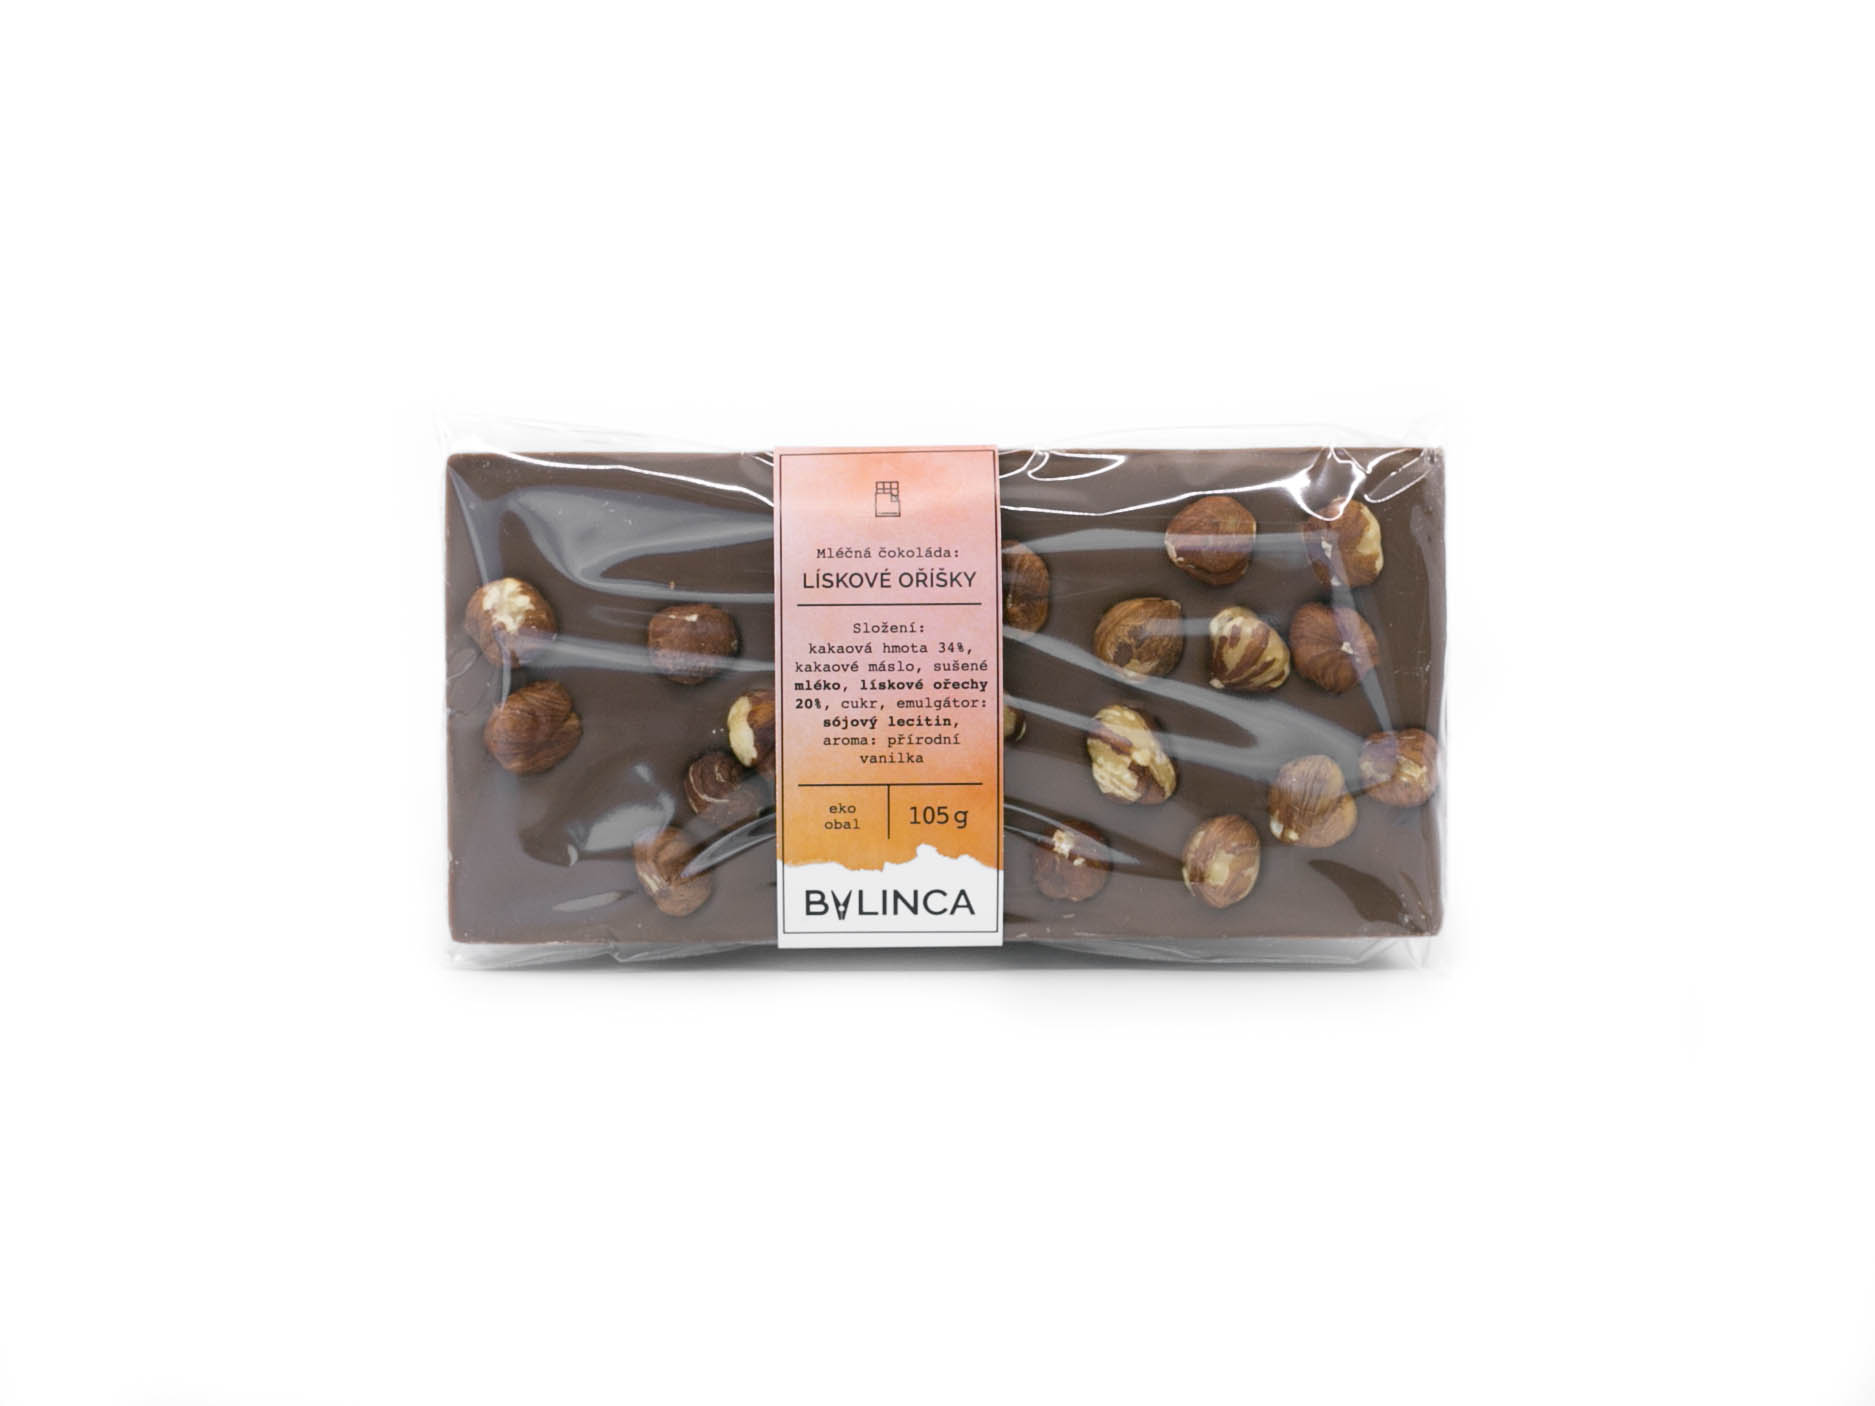 BYLINCA Mléčná čokoláda: Lískové oříšky 105g